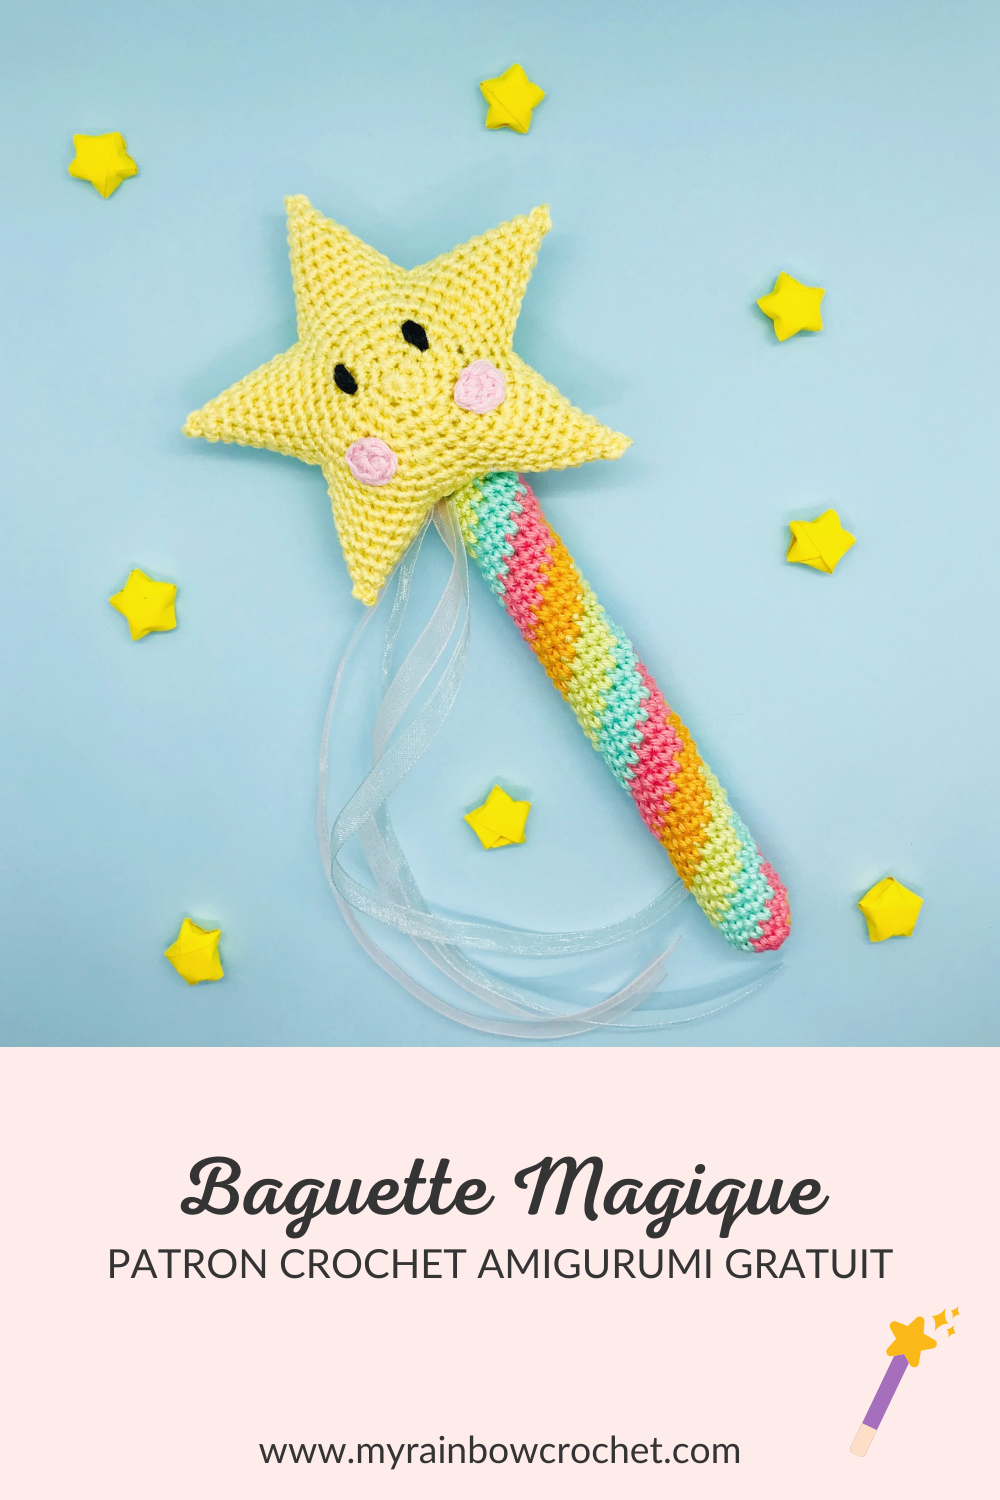 baguette magique patron gratuit crochet amigurumi